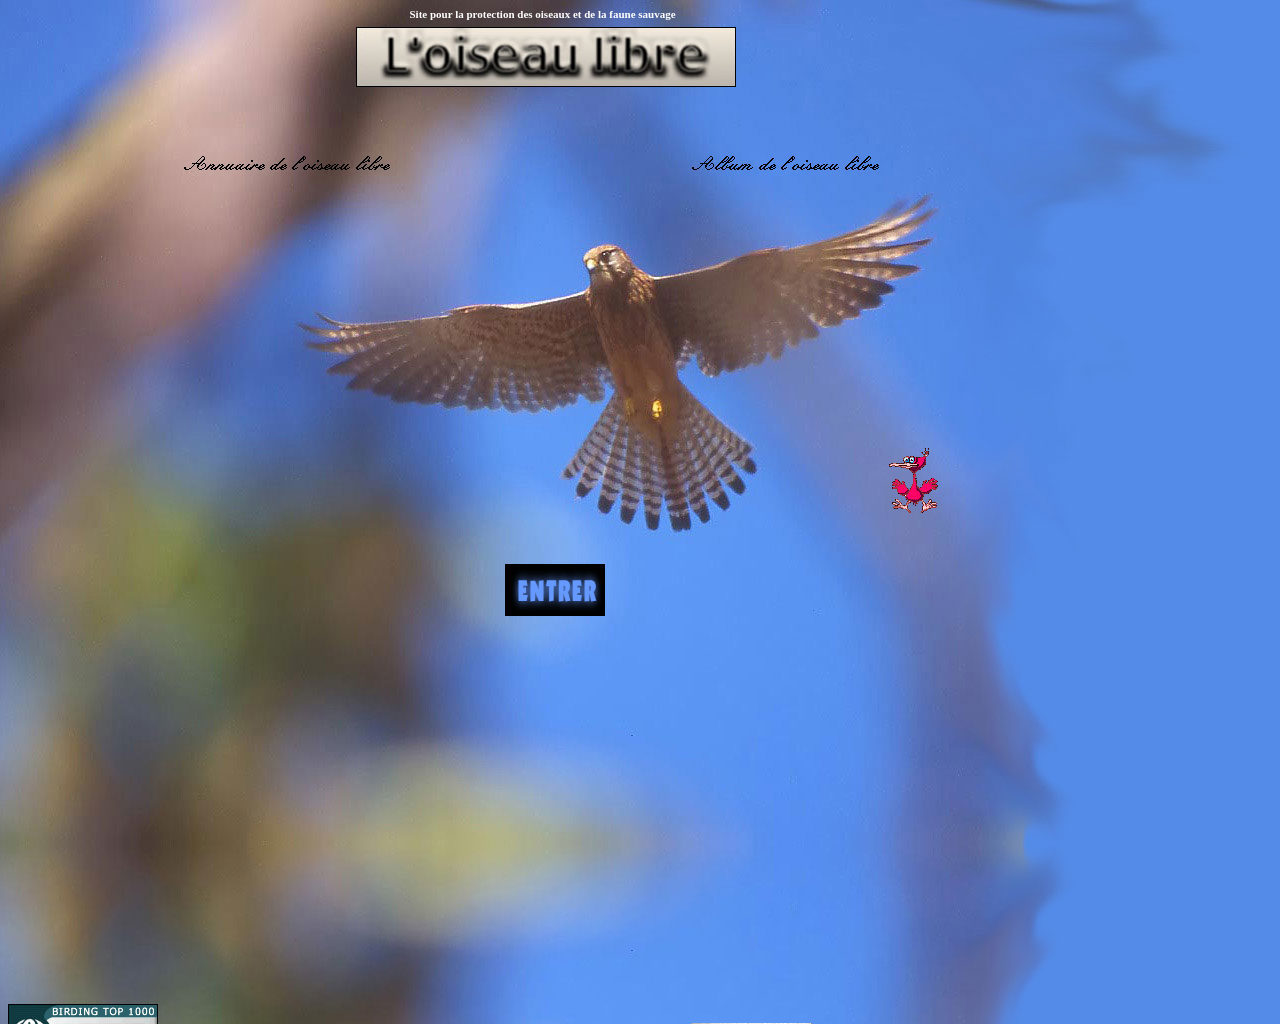 www.oiseau-libre.net